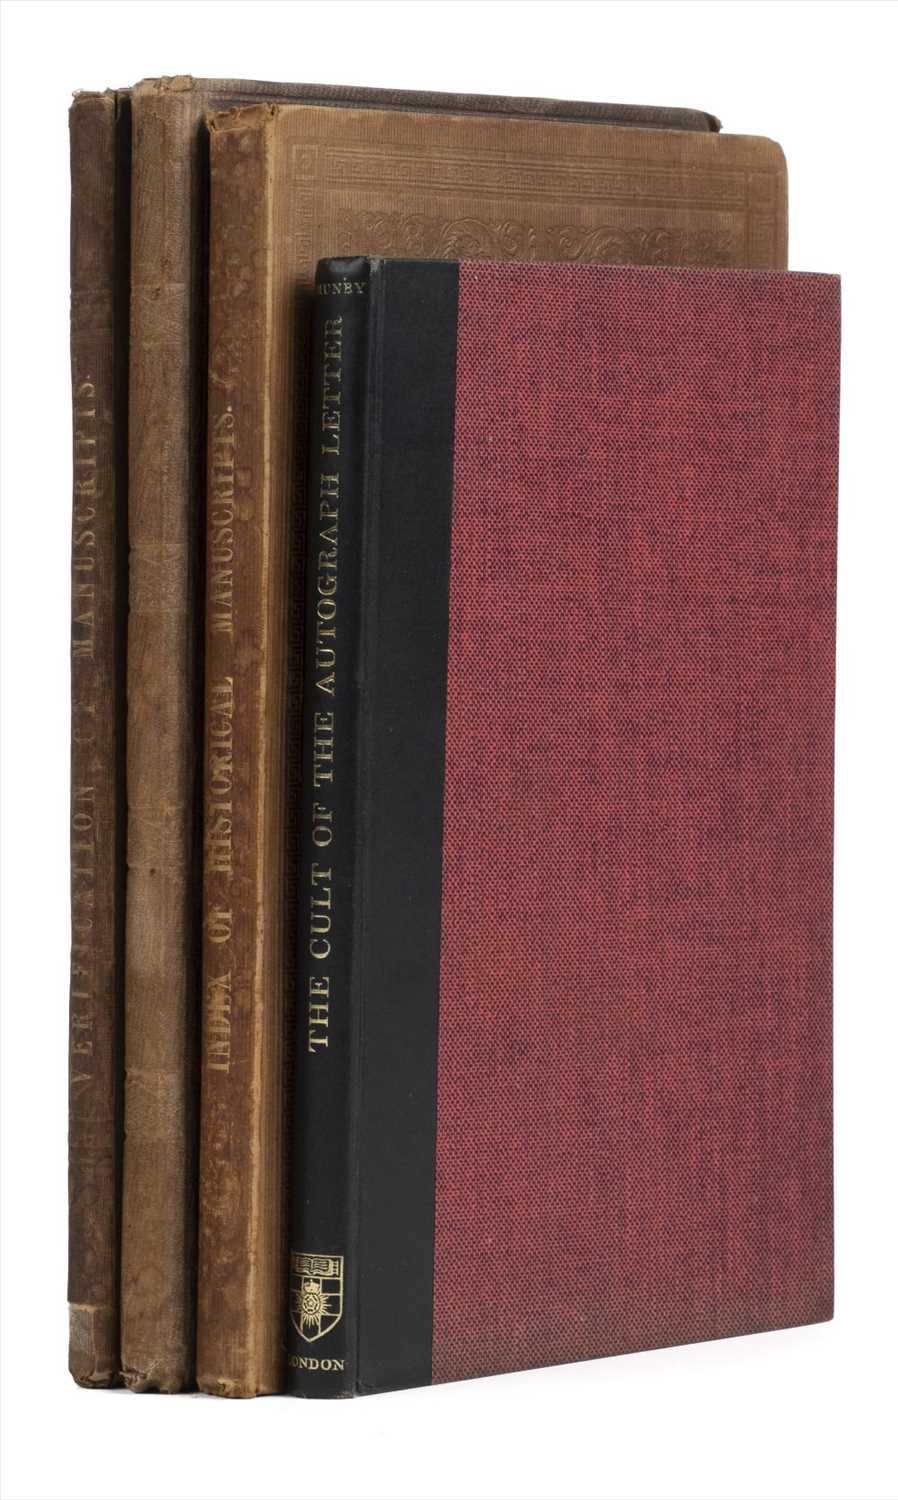 Lot 314 - Turner (Dawson). Descriptive Index of the Contents of Five Manuscript Volumes, 1843